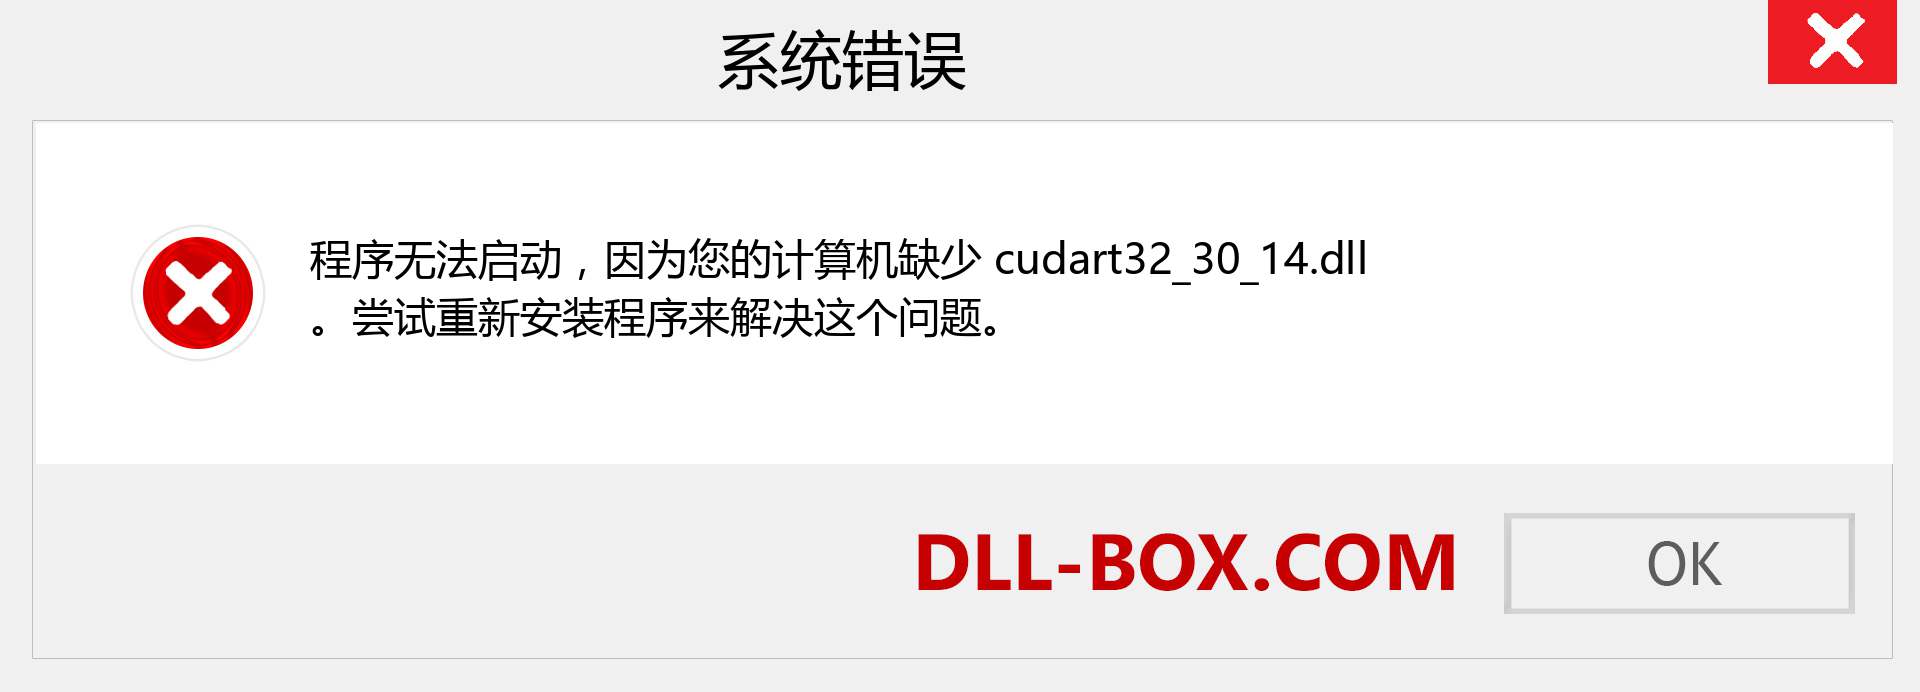 cudart32_30_14.dll 文件丢失？。 适用于 Windows 7、8、10 的下载 - 修复 Windows、照片、图像上的 cudart32_30_14 dll 丢失错误